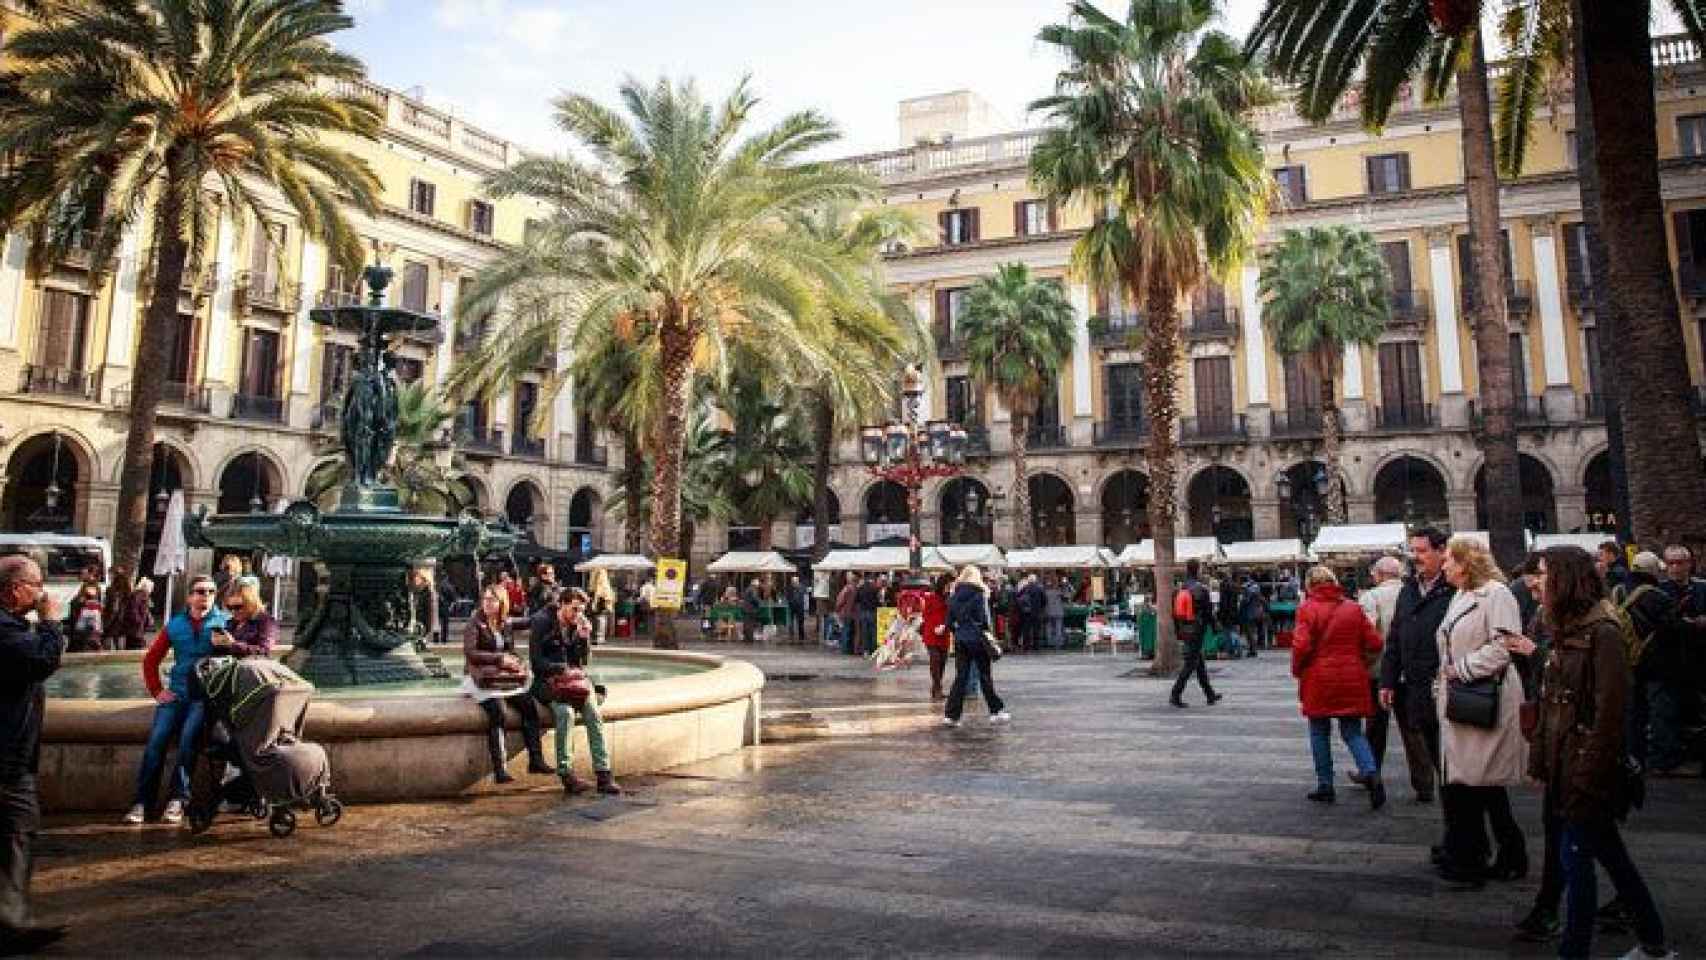 Imagen de la Plaza Real de Barcelona, en Ciutat Vella, donde los especuladores buscan pisos turísticos / CG